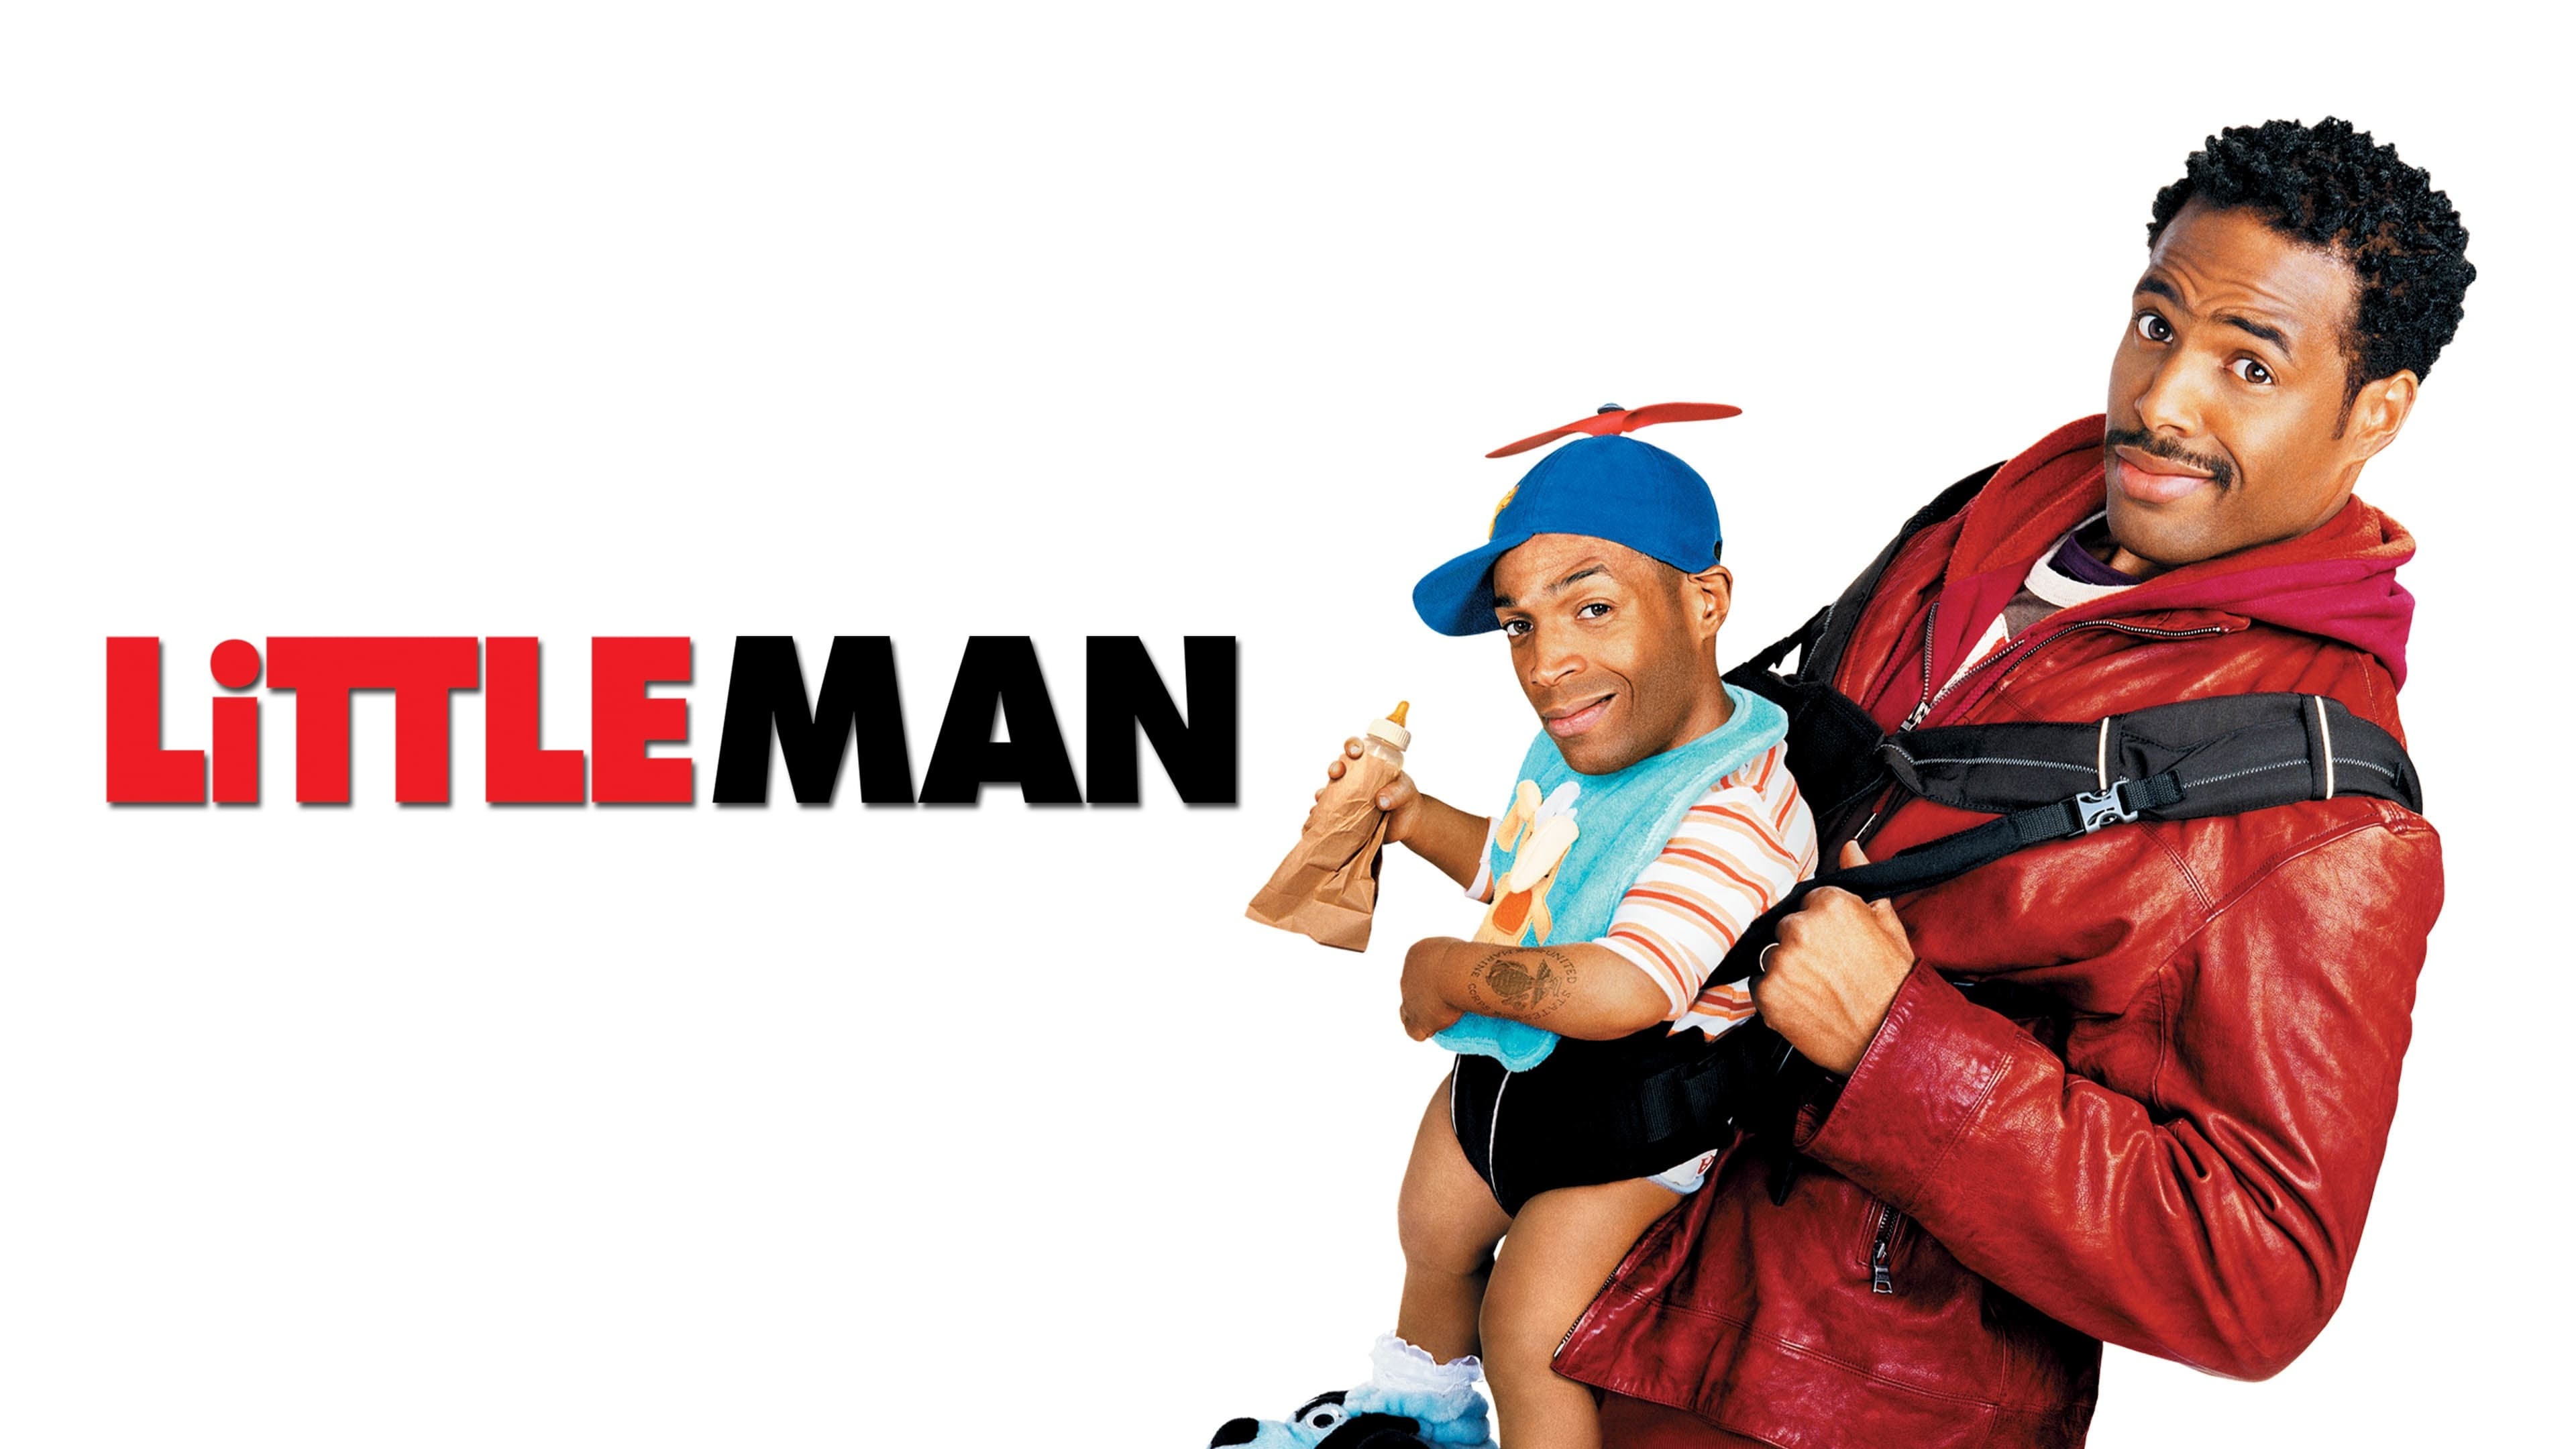 Little Man (2006)